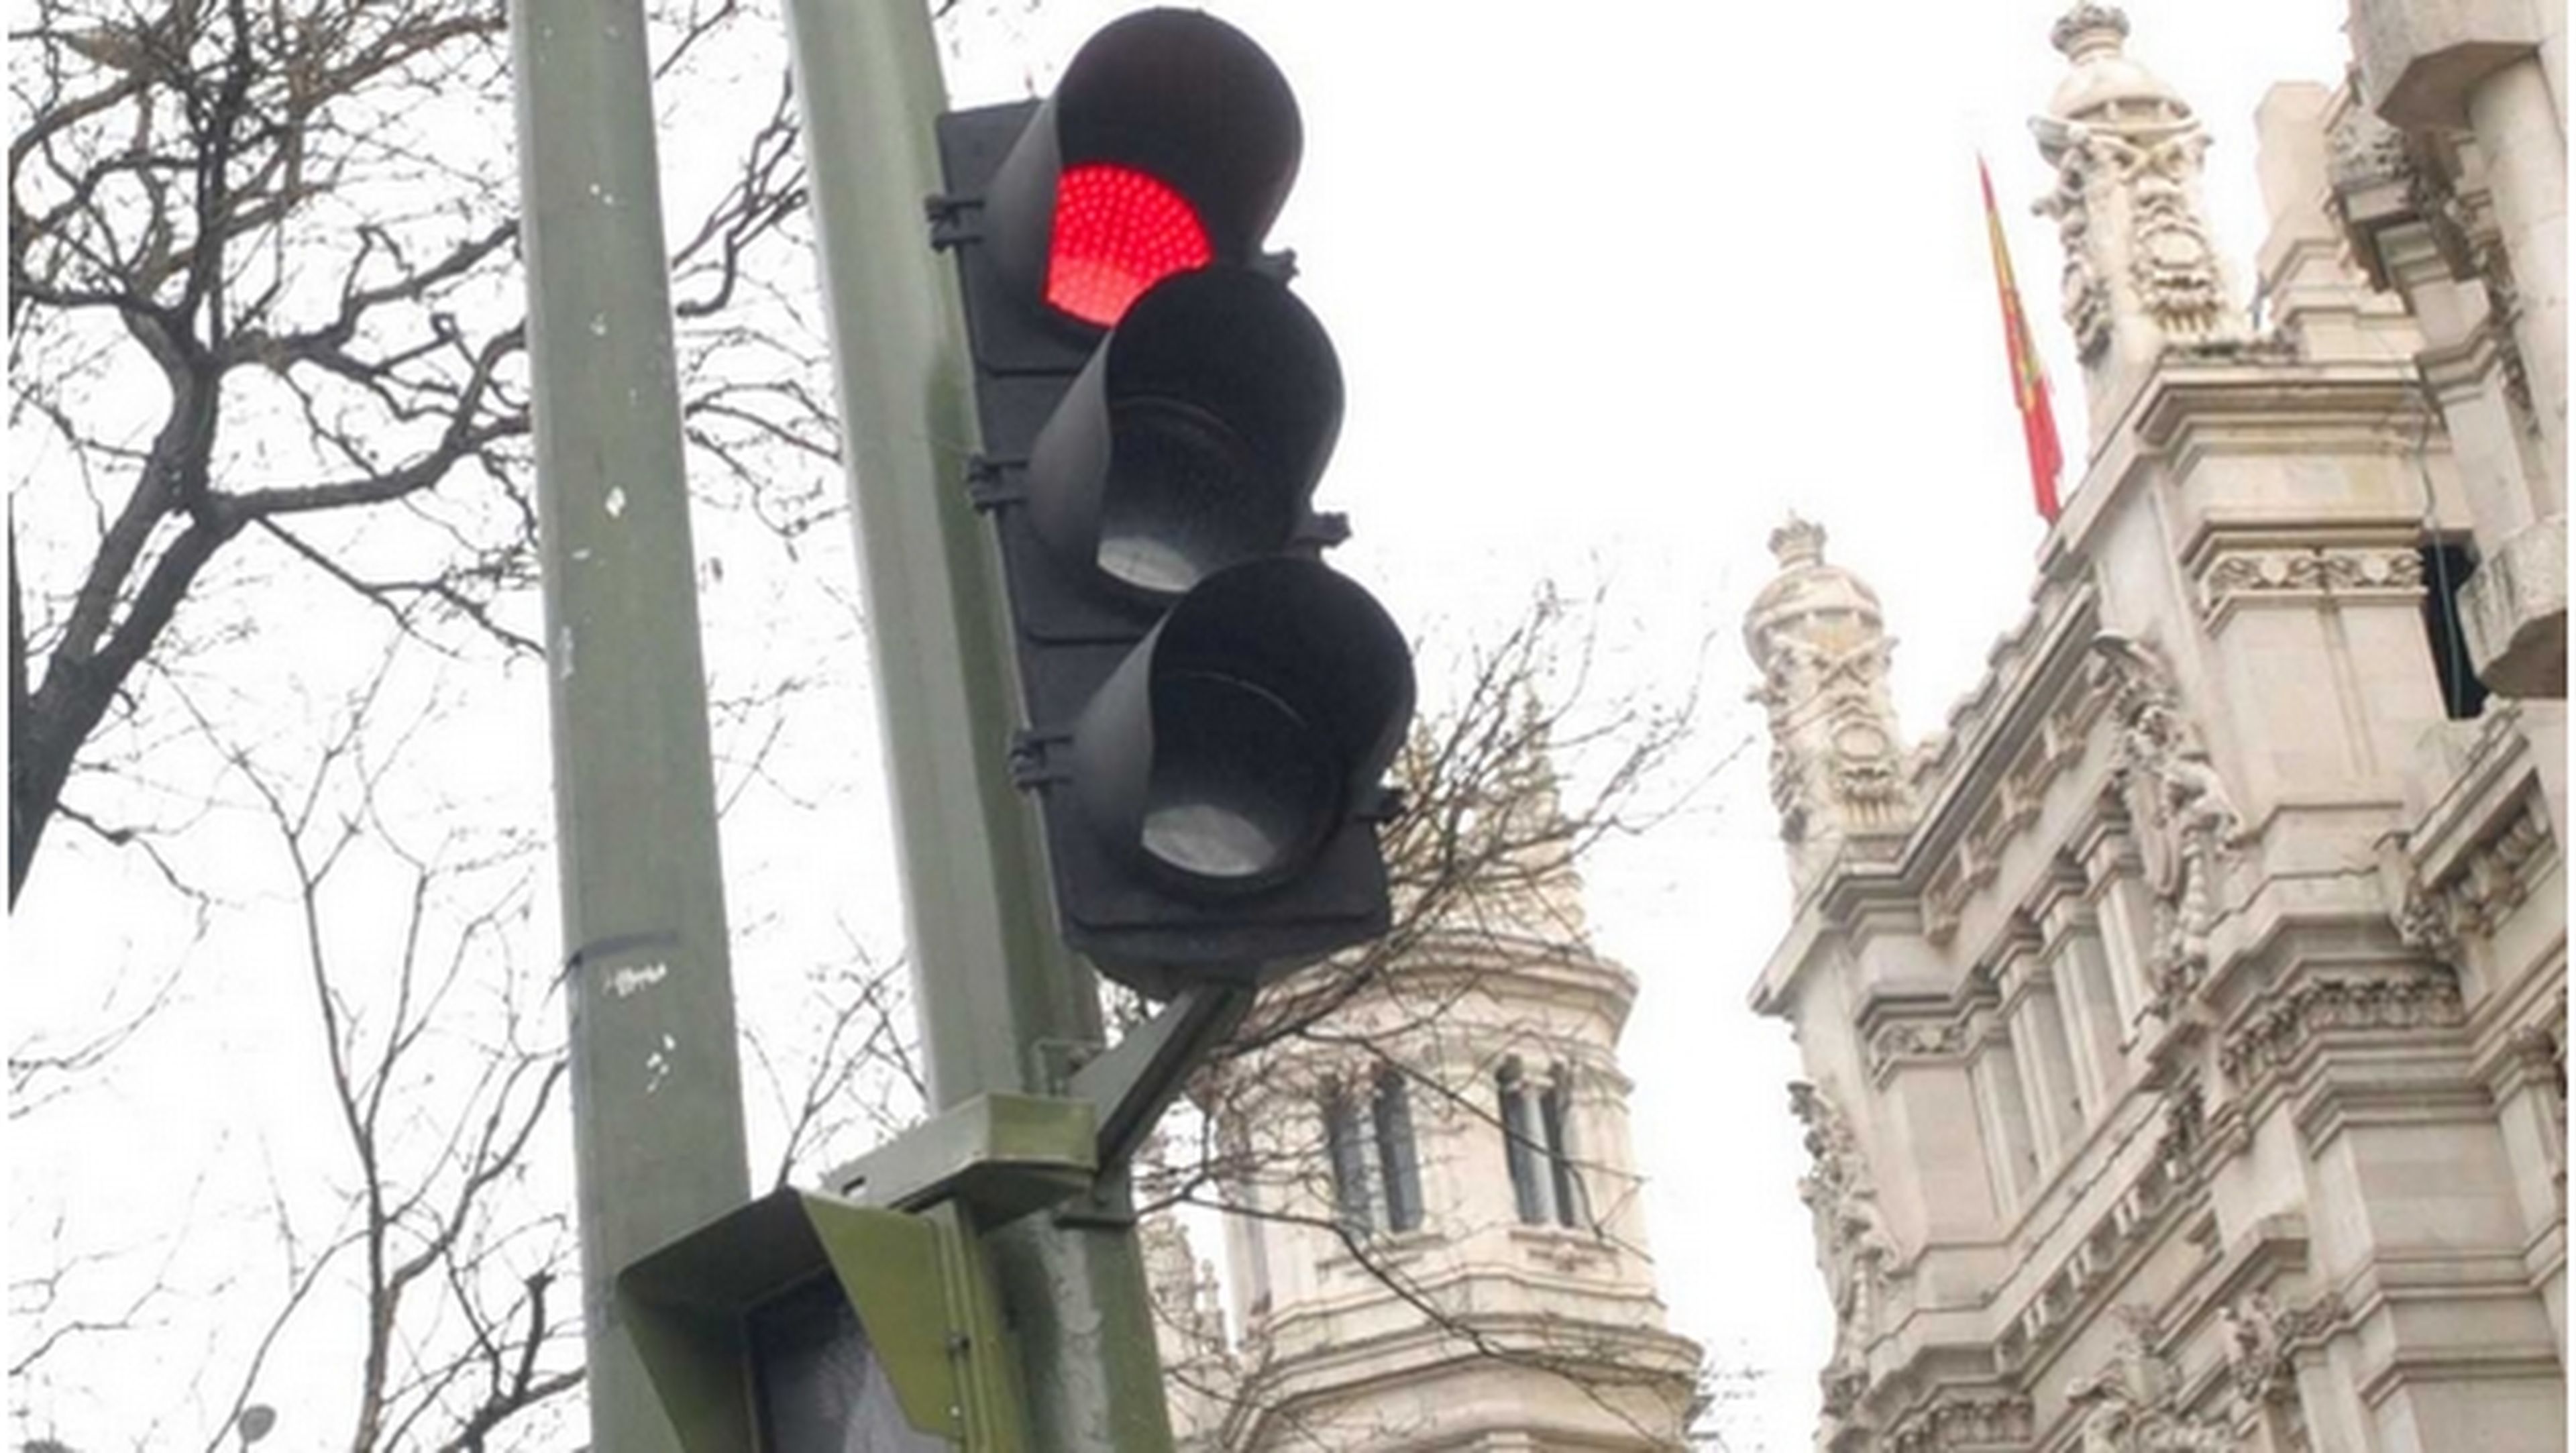 Gadget cambia semáforo de rojo a verde